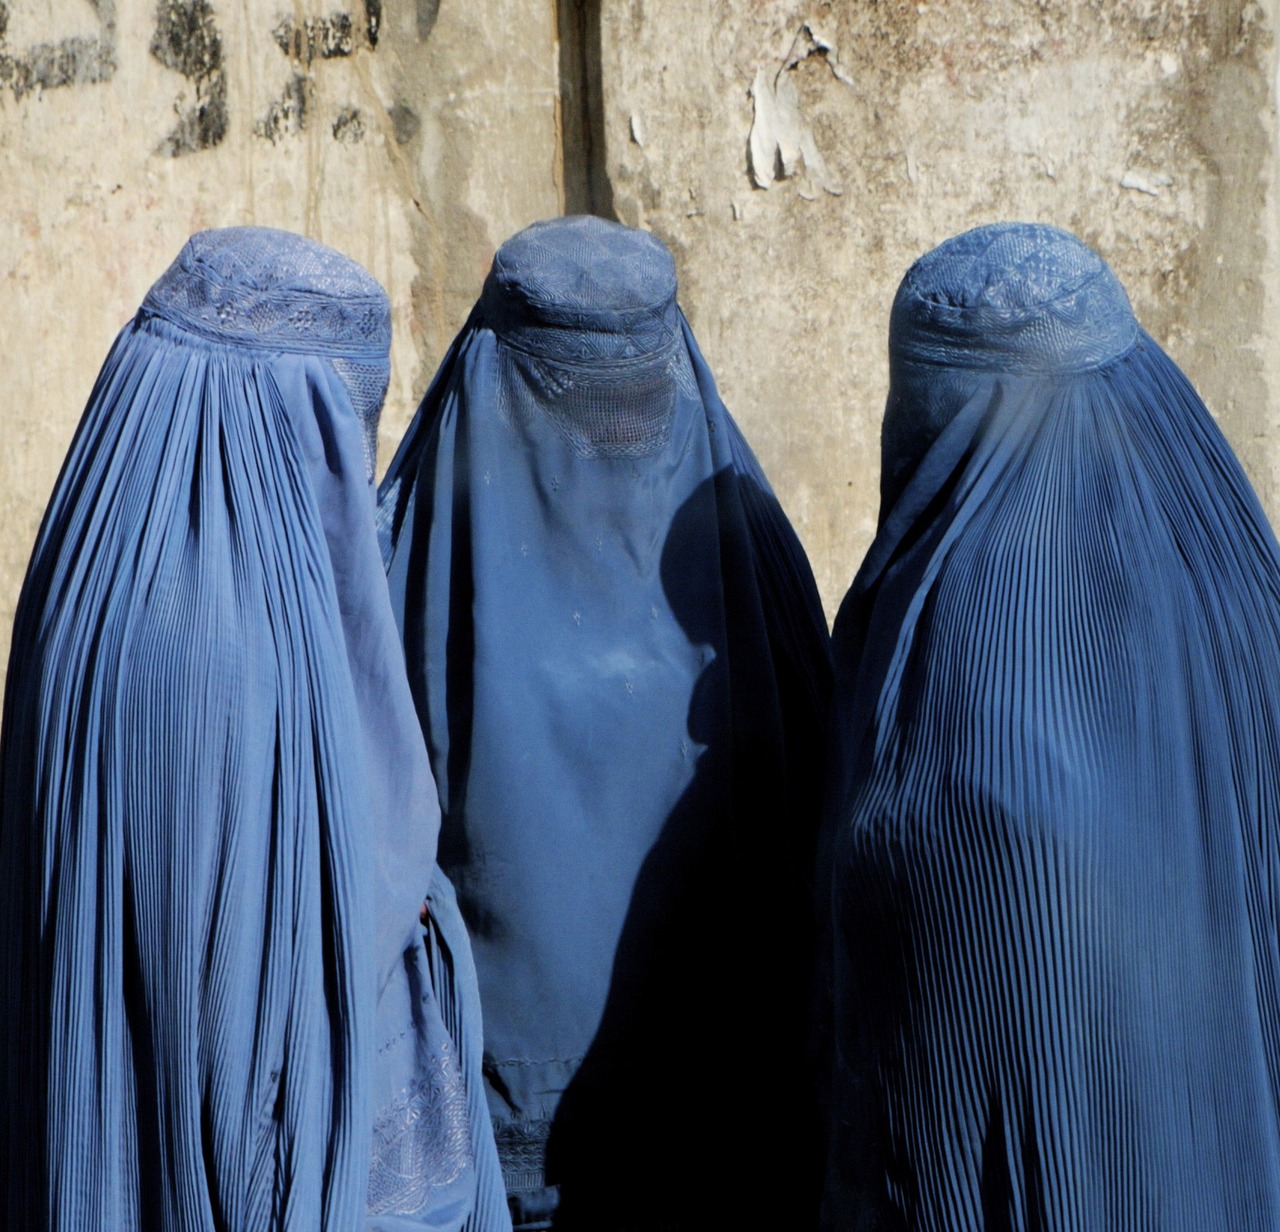 burqa-women.jpg